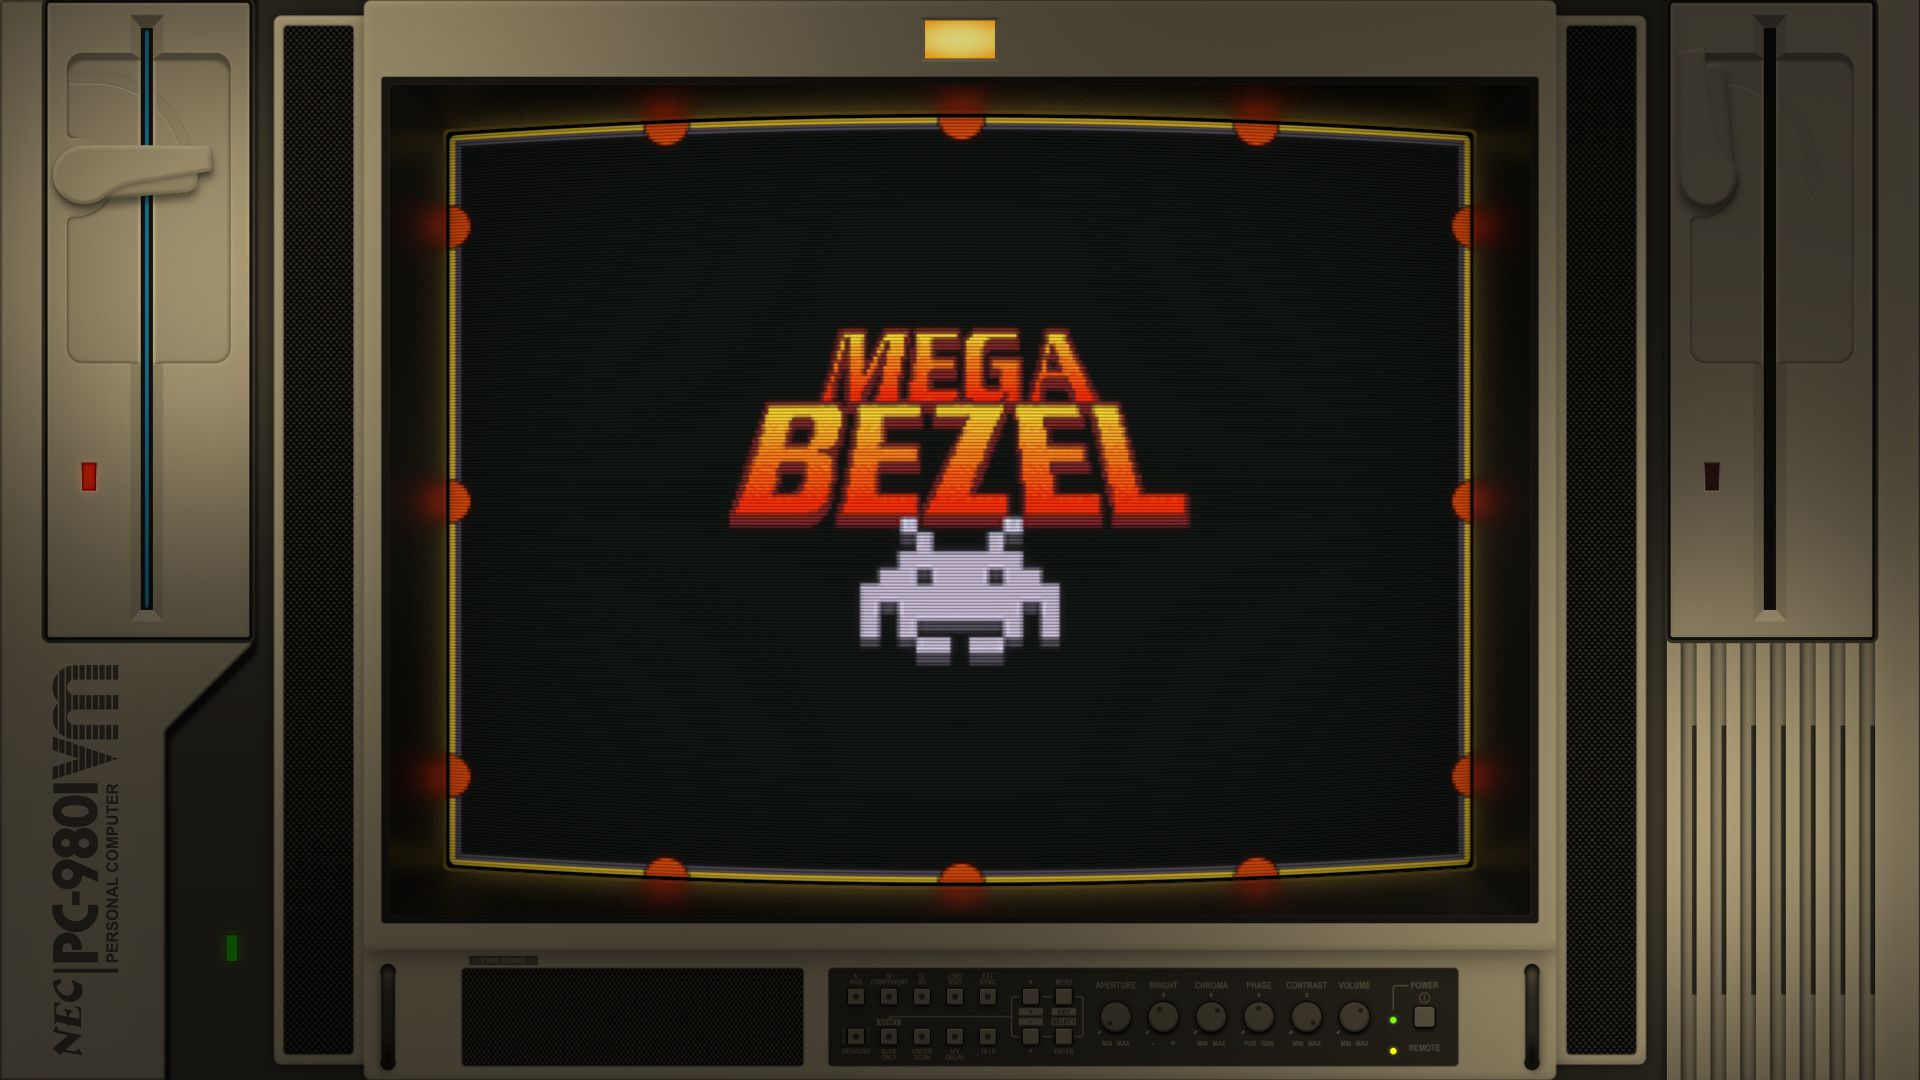 Nec Pc 9801 Duimon Mega Bezel Graphics 9657